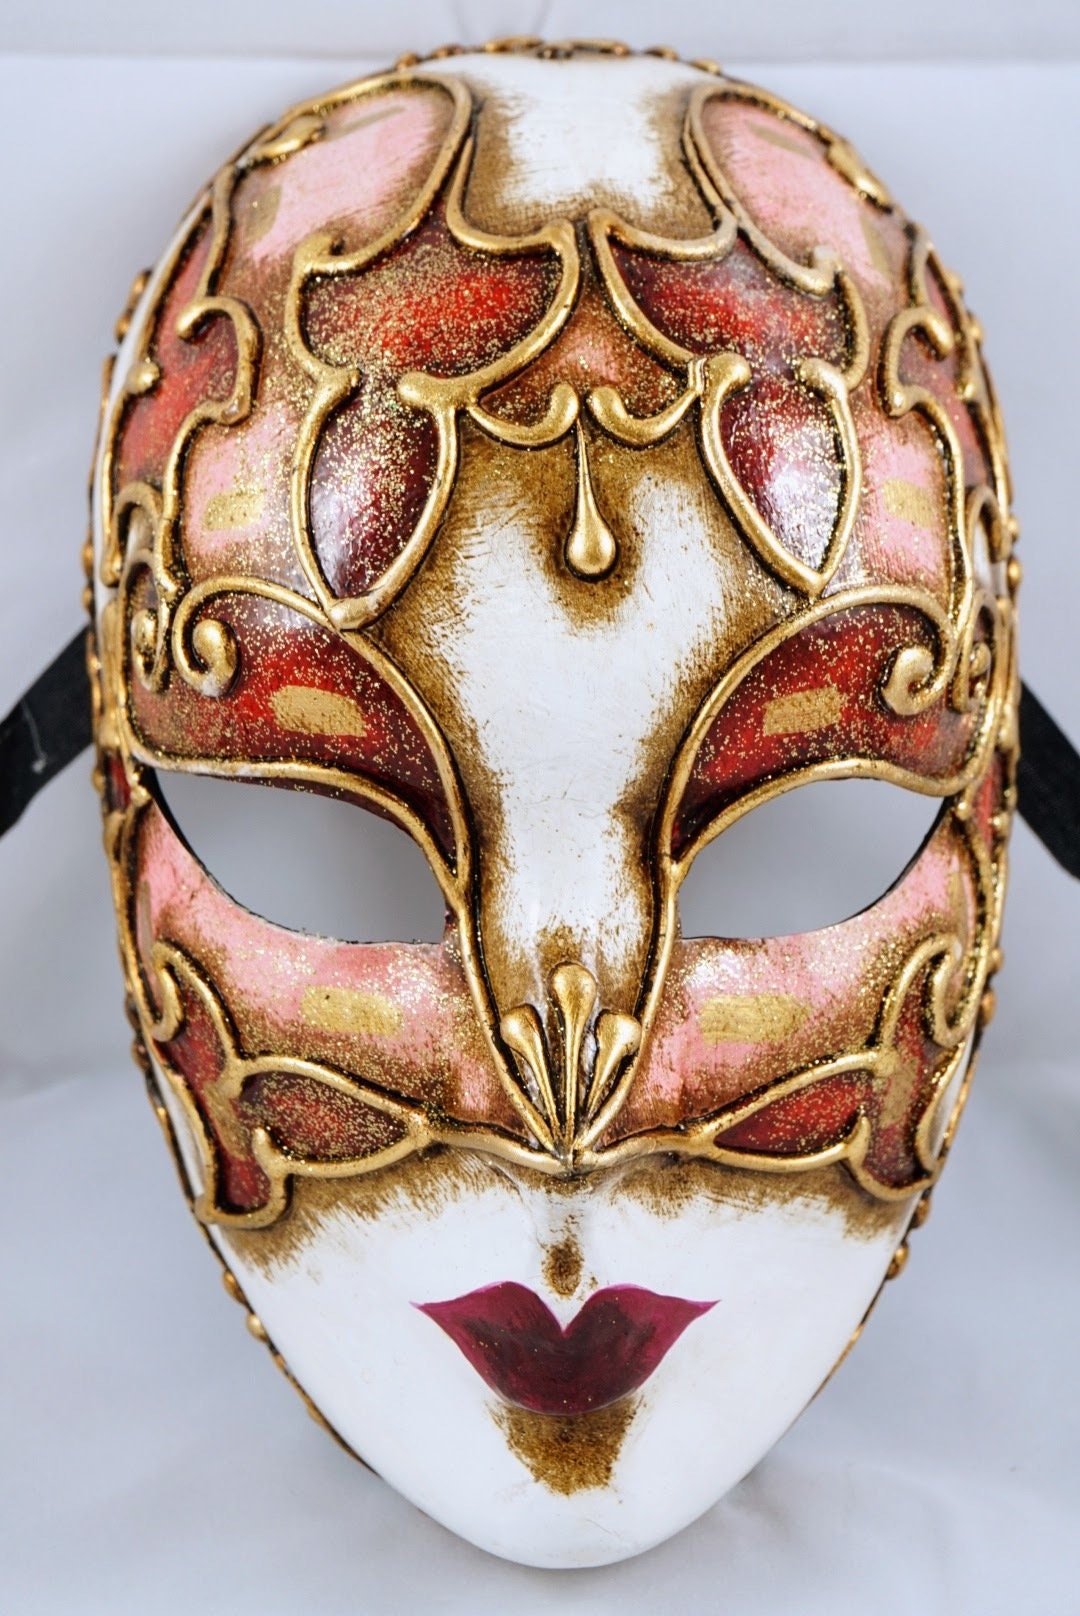 Dos Hermanas. Máscara veneciana italiana de cara completa Carnaval de Venecia de papel